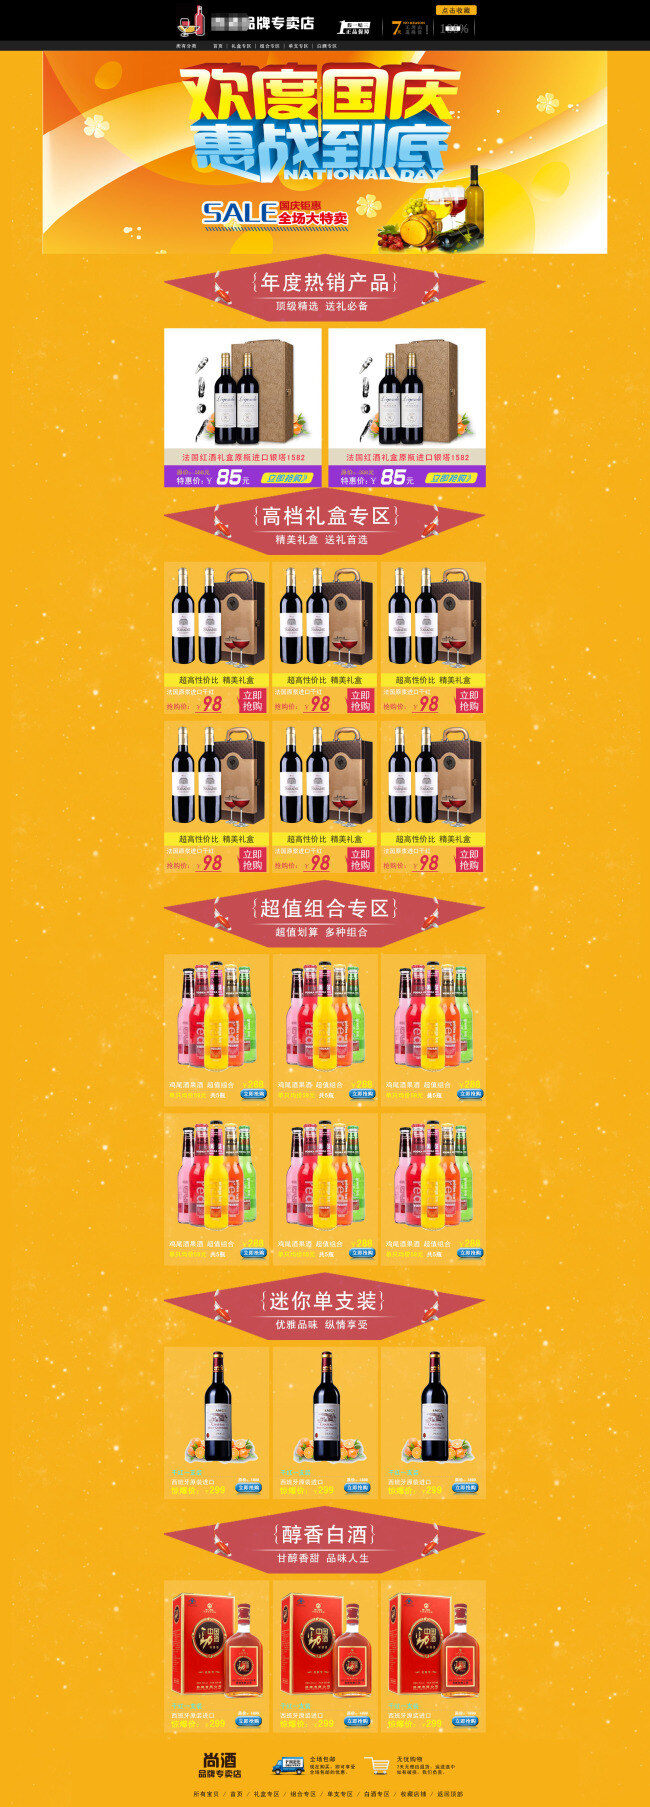 淘宝 红酒 品牌 促销 活动促销 淘宝活动海报 促销海报 大图海报 黄色